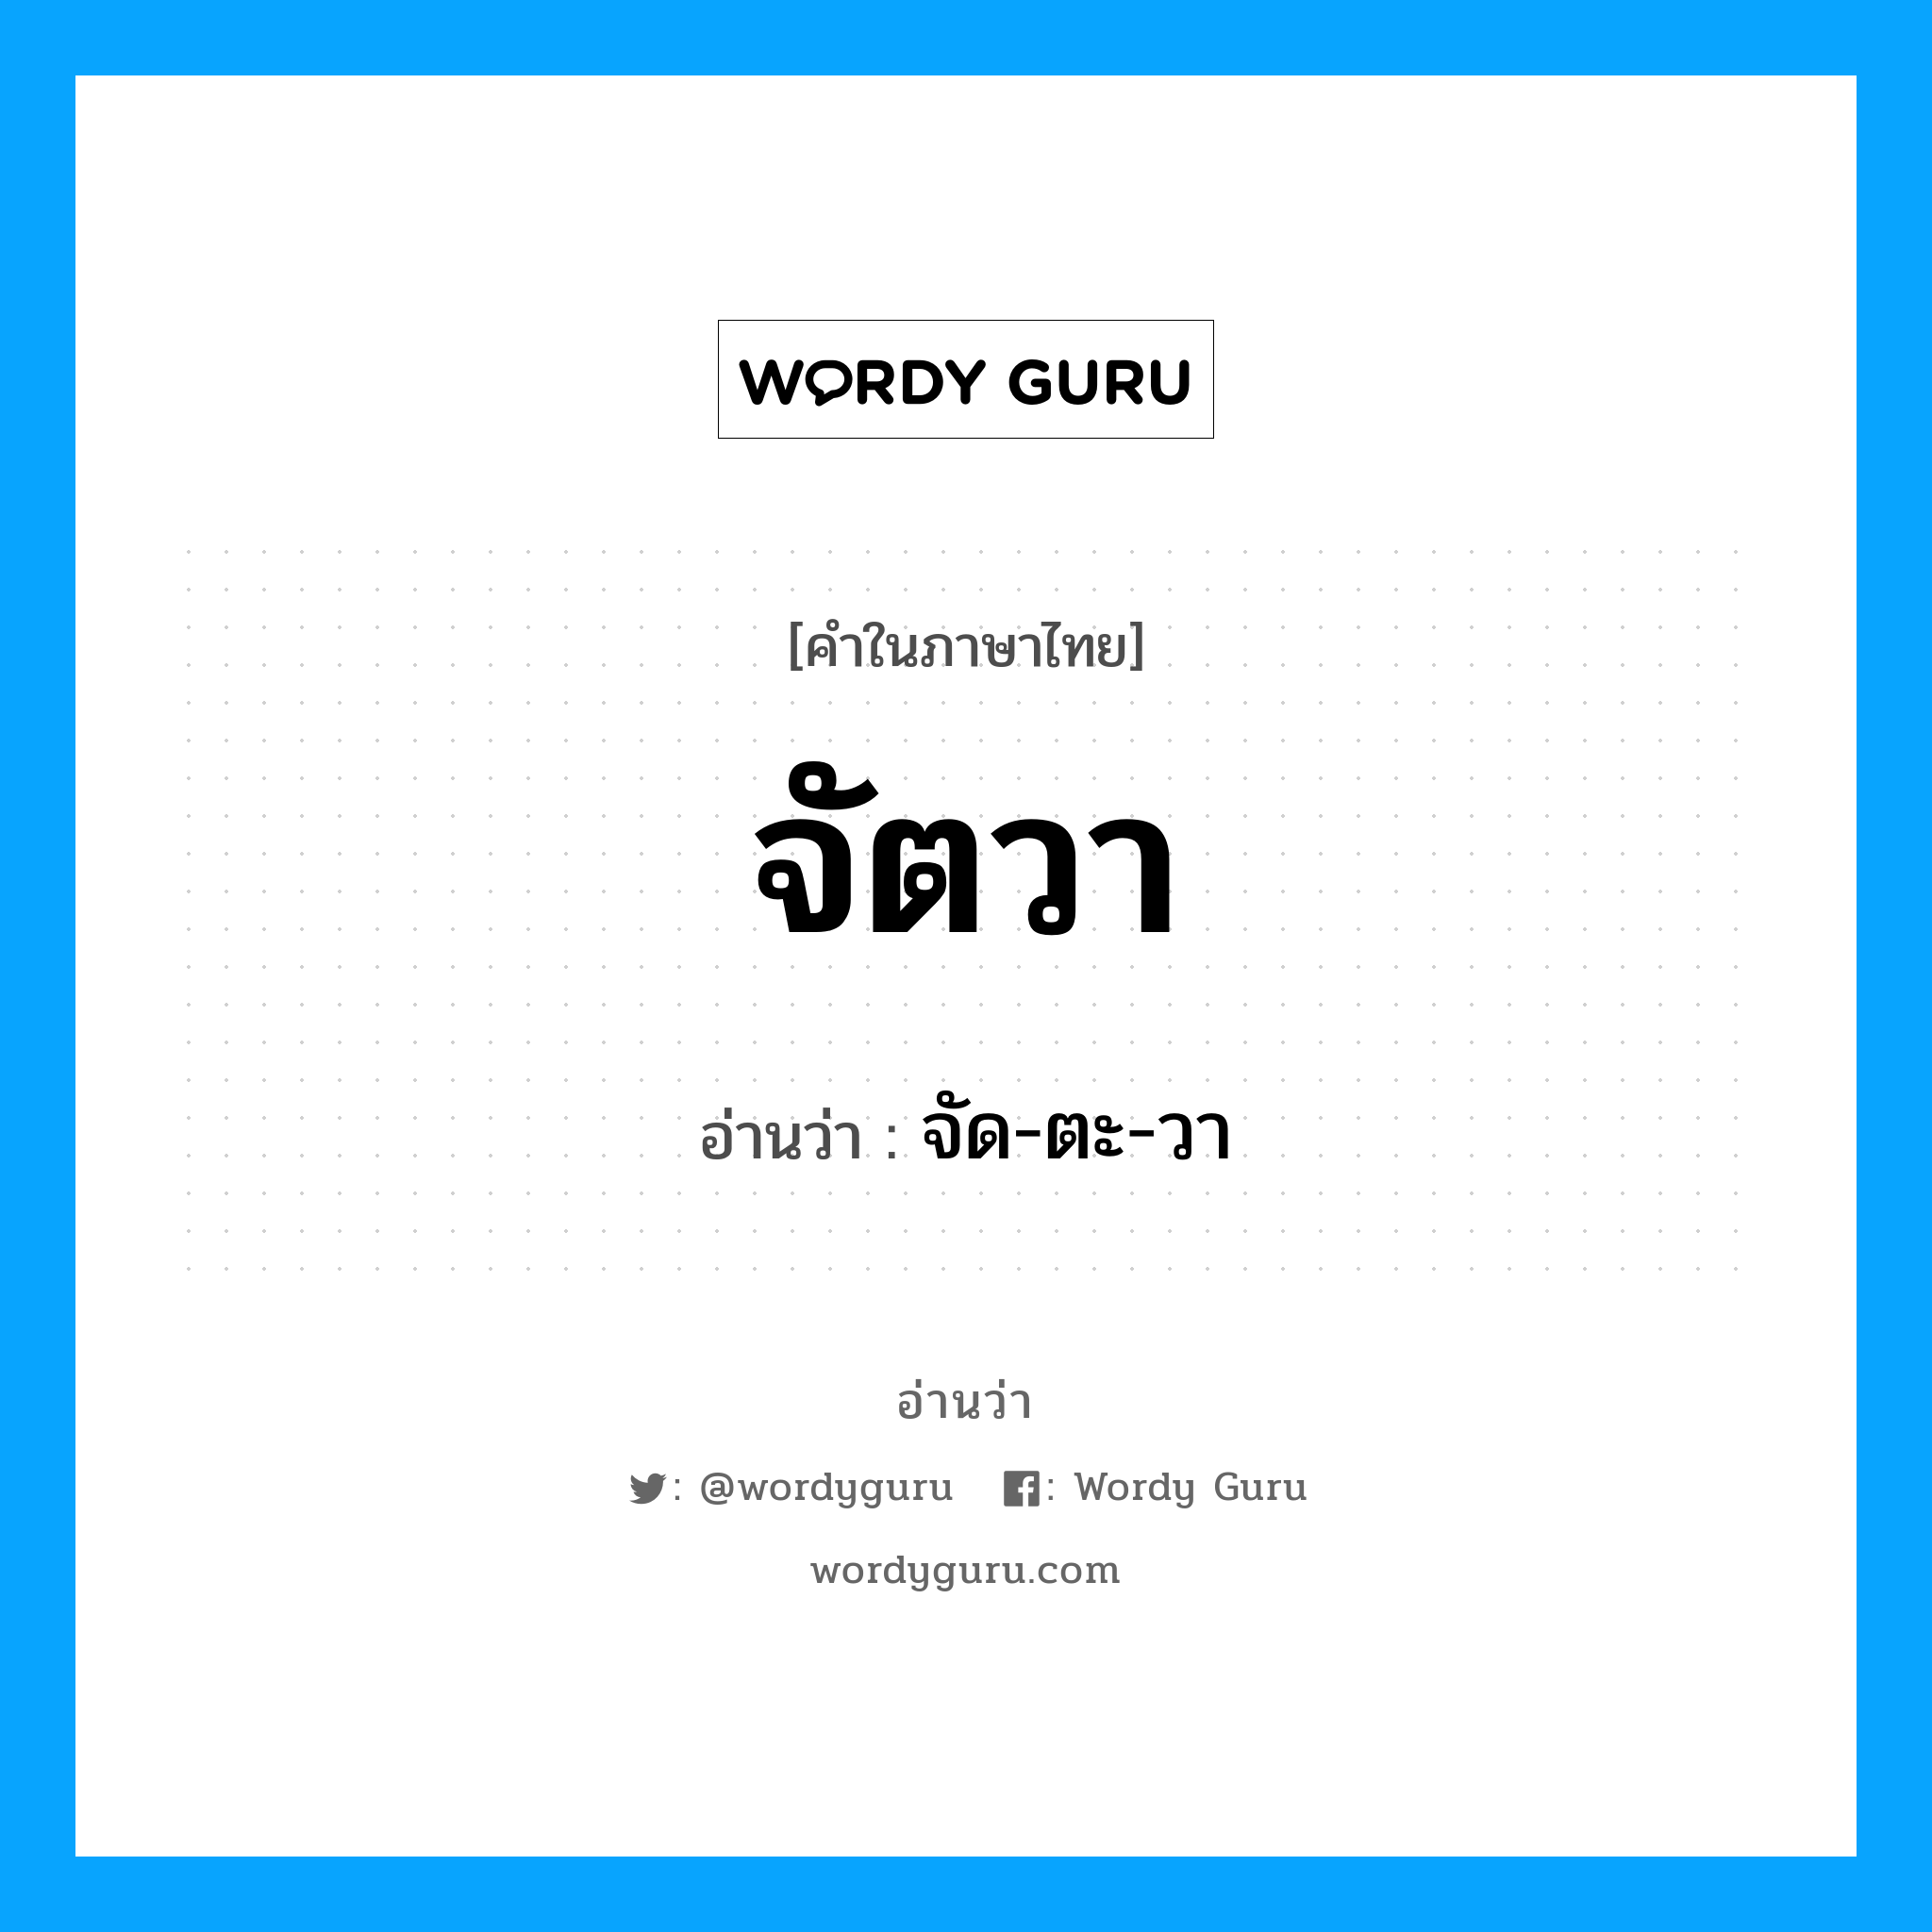 จัด-ตะ-วา เป็นคำอ่านของคำไหน?, คำในภาษาไทย จัด-ตะ-วา อ่านว่า จัตวา